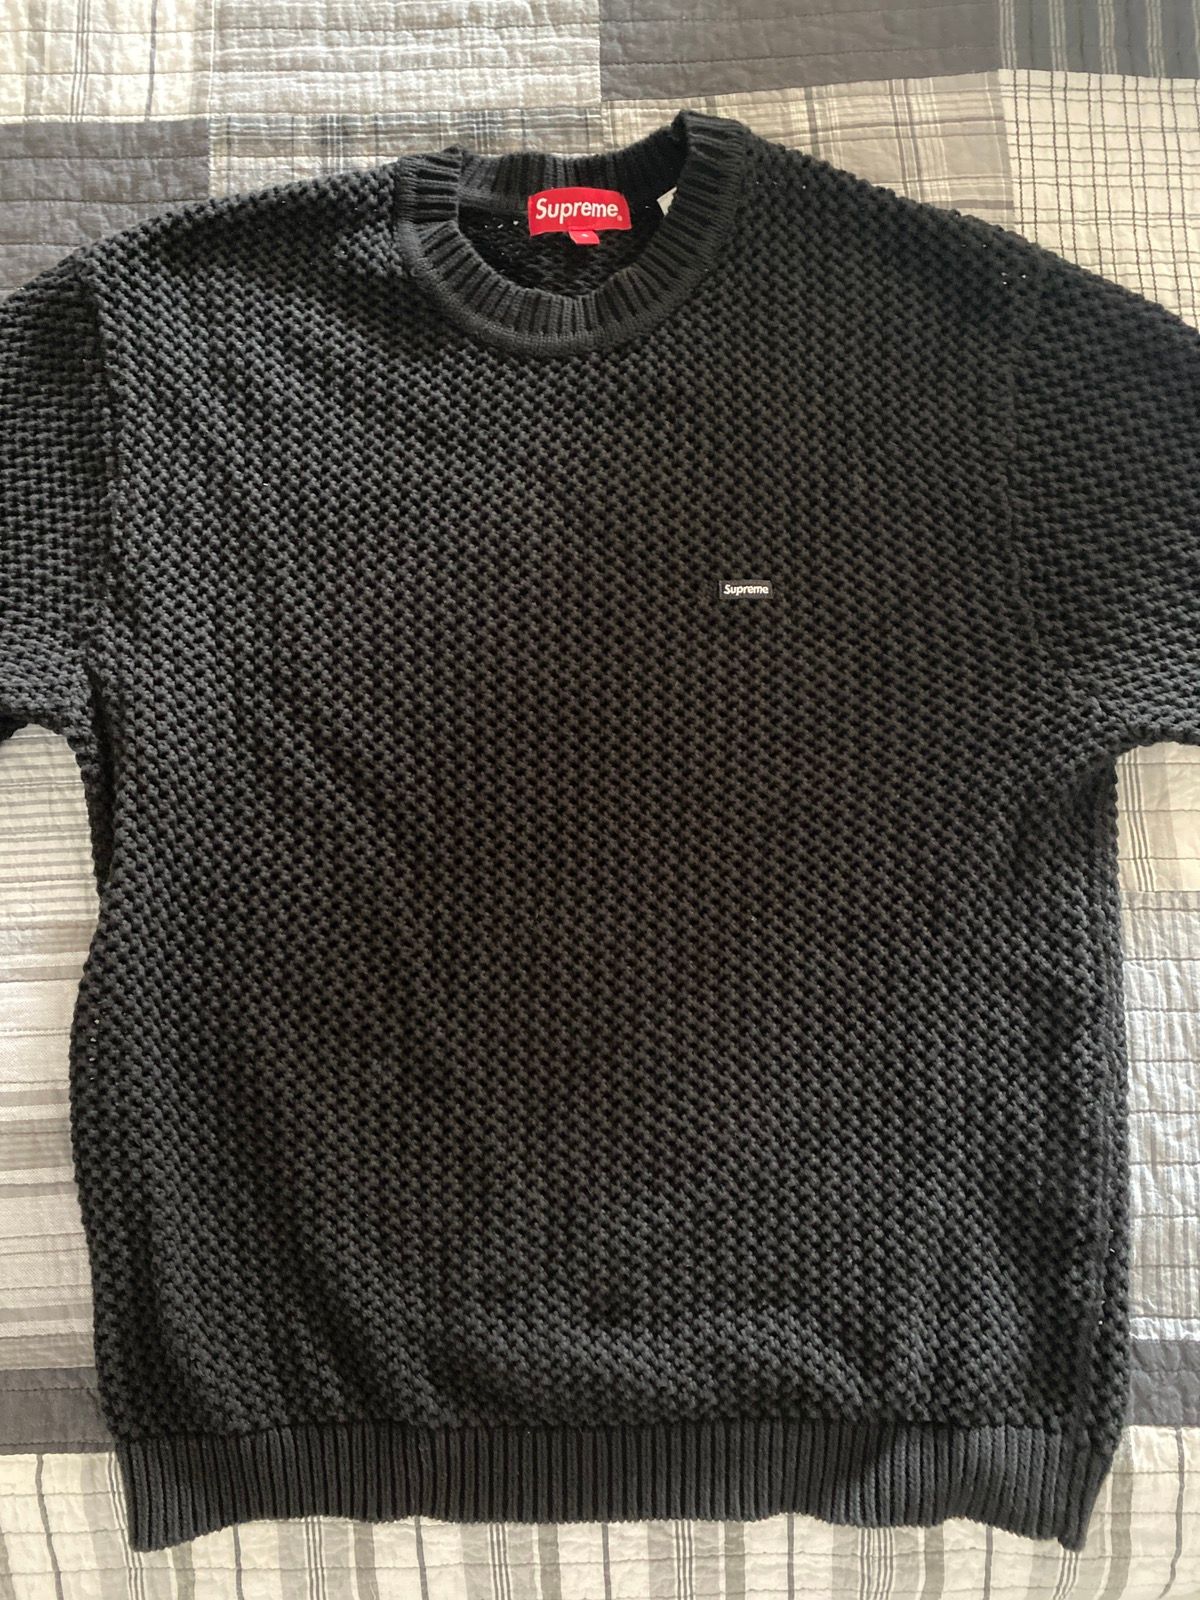 Supreme Supreme Open Knit Small Box Sweater | Grailed